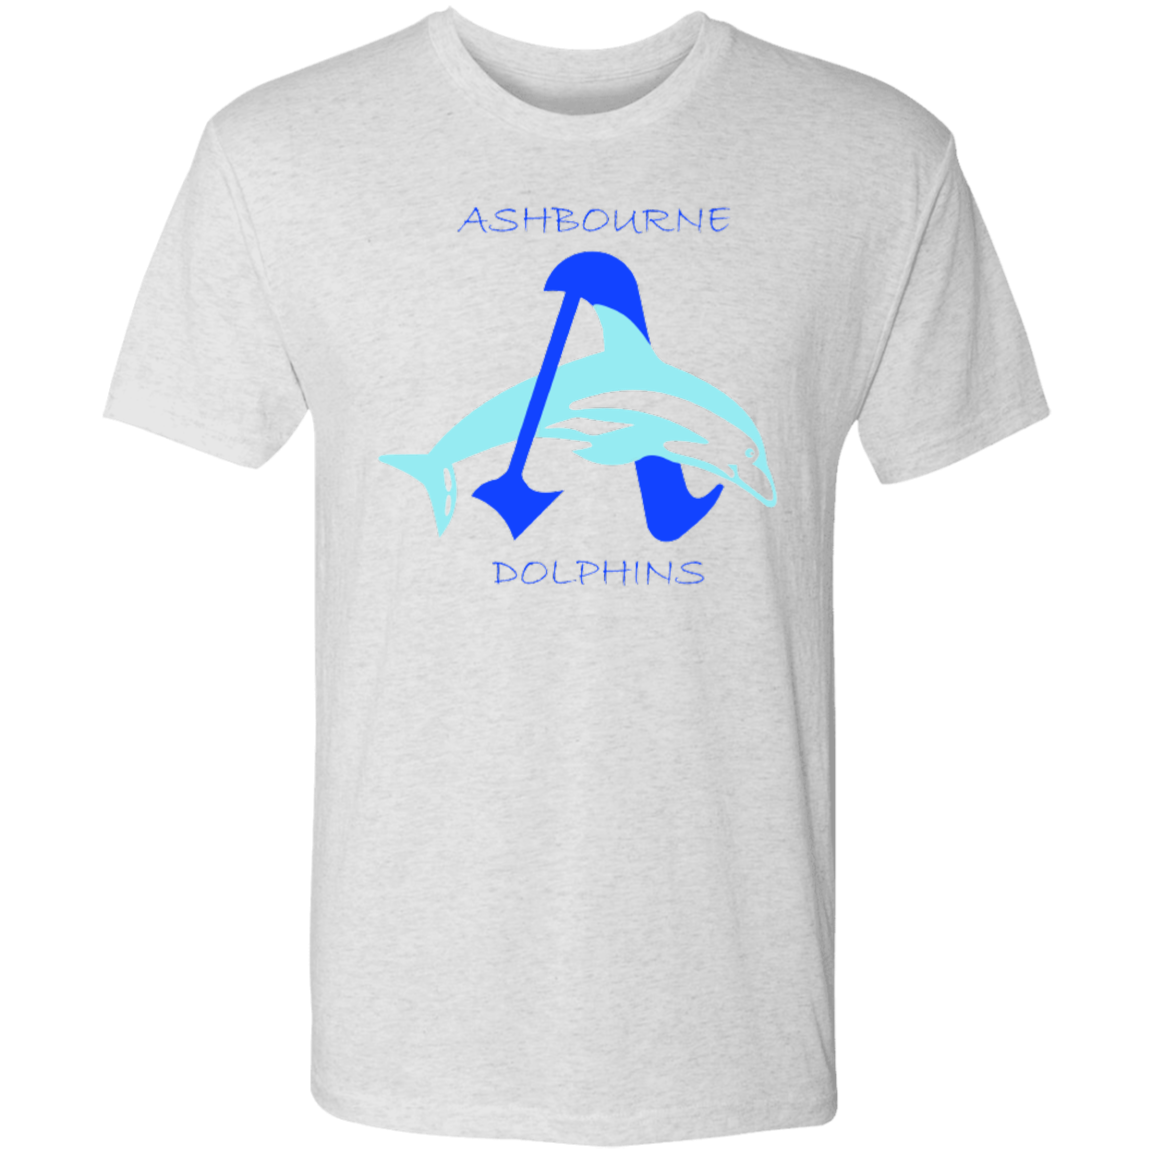 Ashbourne TeamStore Men's Triblend T-Shirt